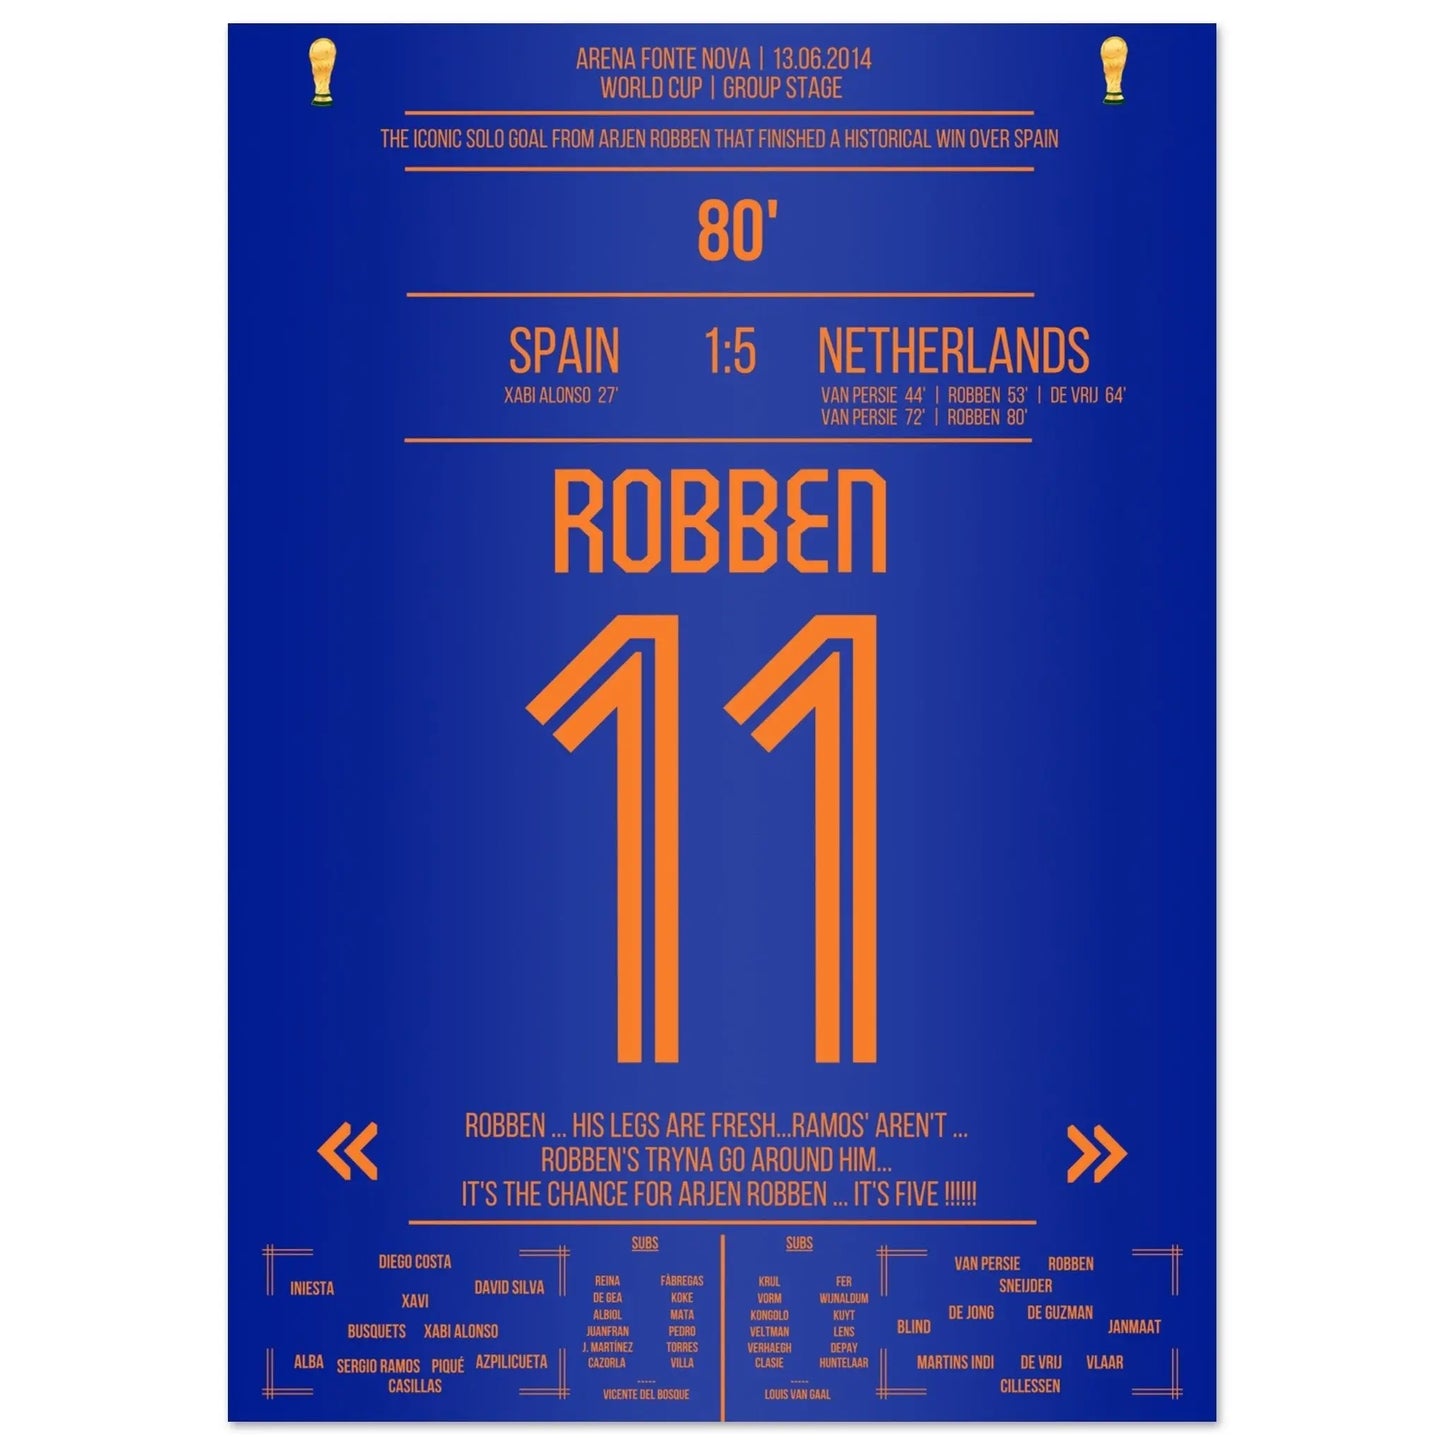 Robben's solodoelpunt tegen Spanje op het WK 2014